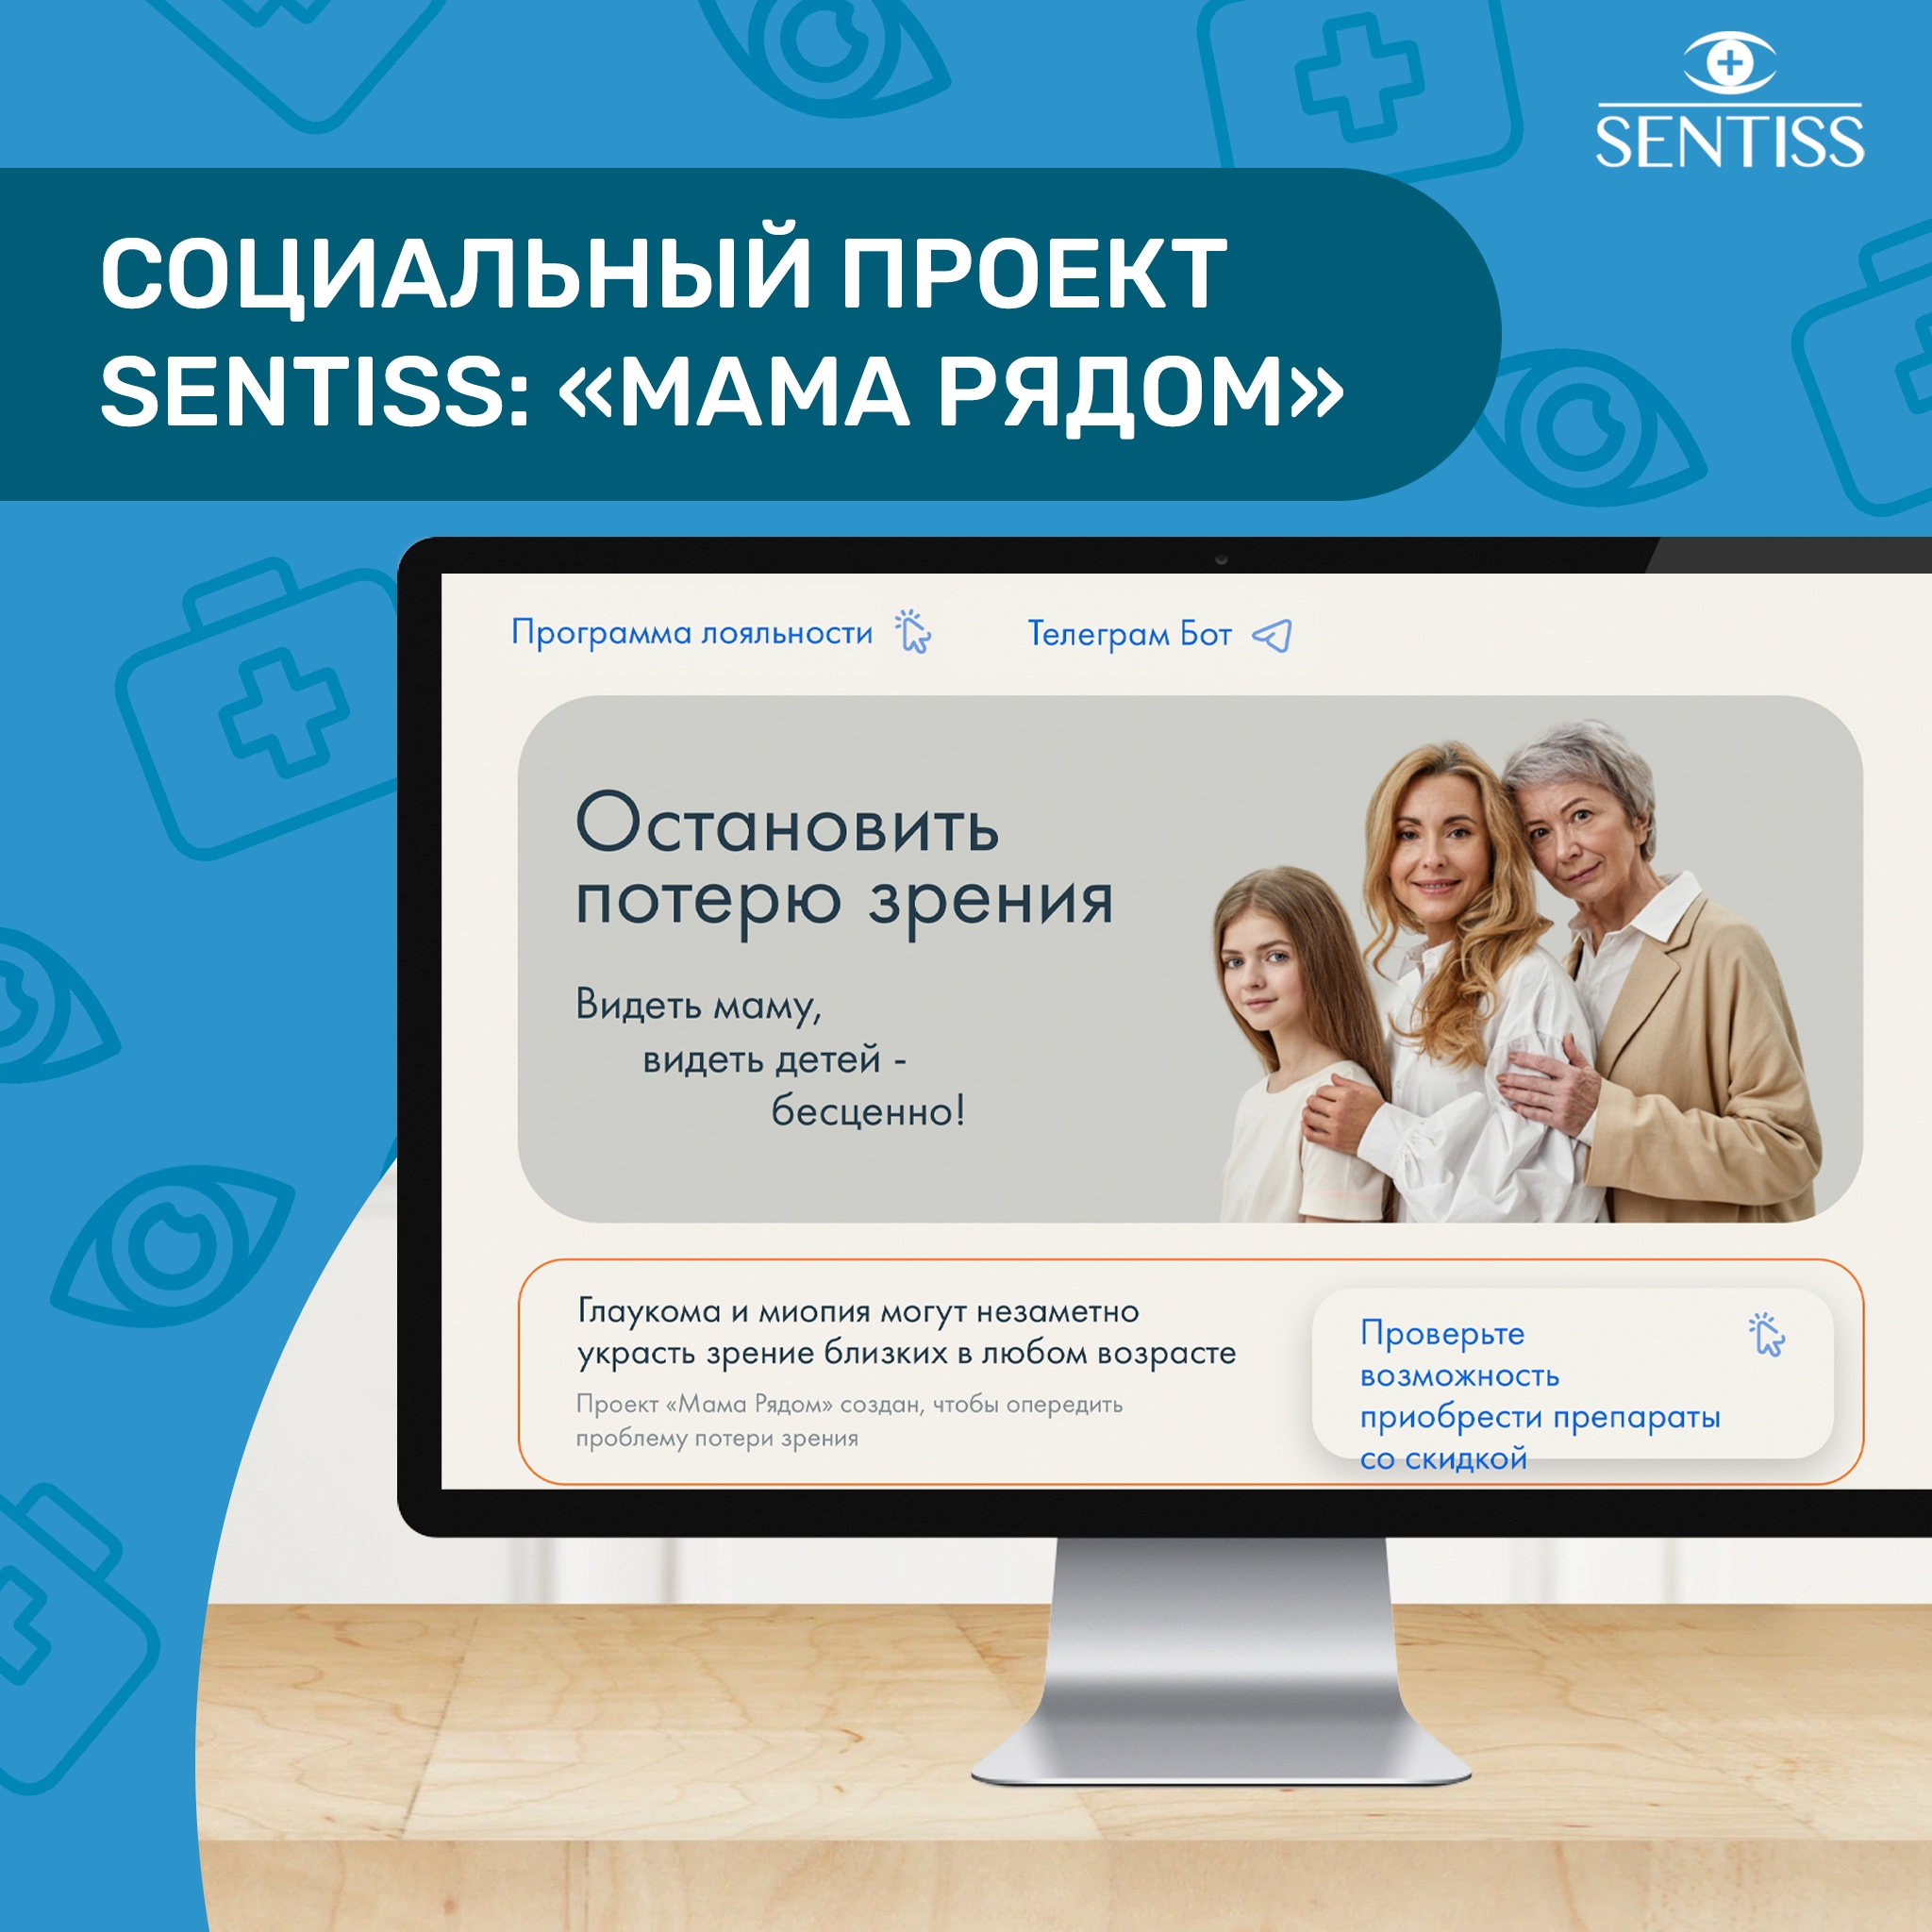 Социальный проект Sentiss "Мама Рядом"